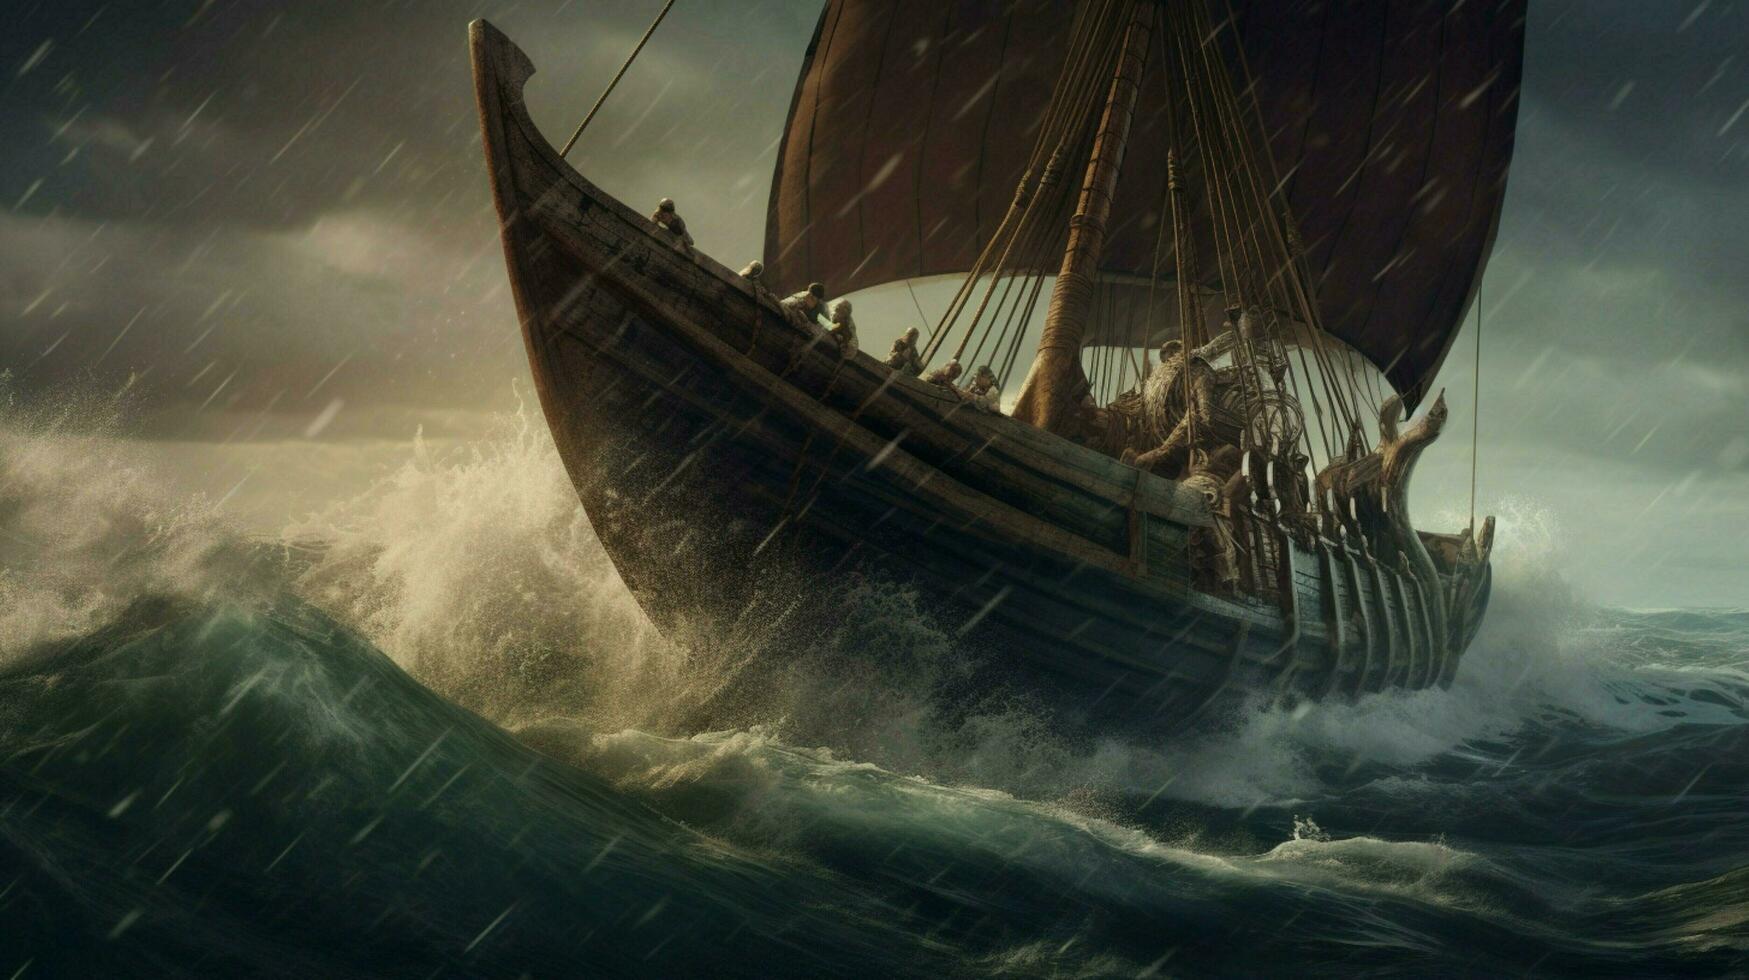 majestätisk viking fartyg segling på stormig hav med foto